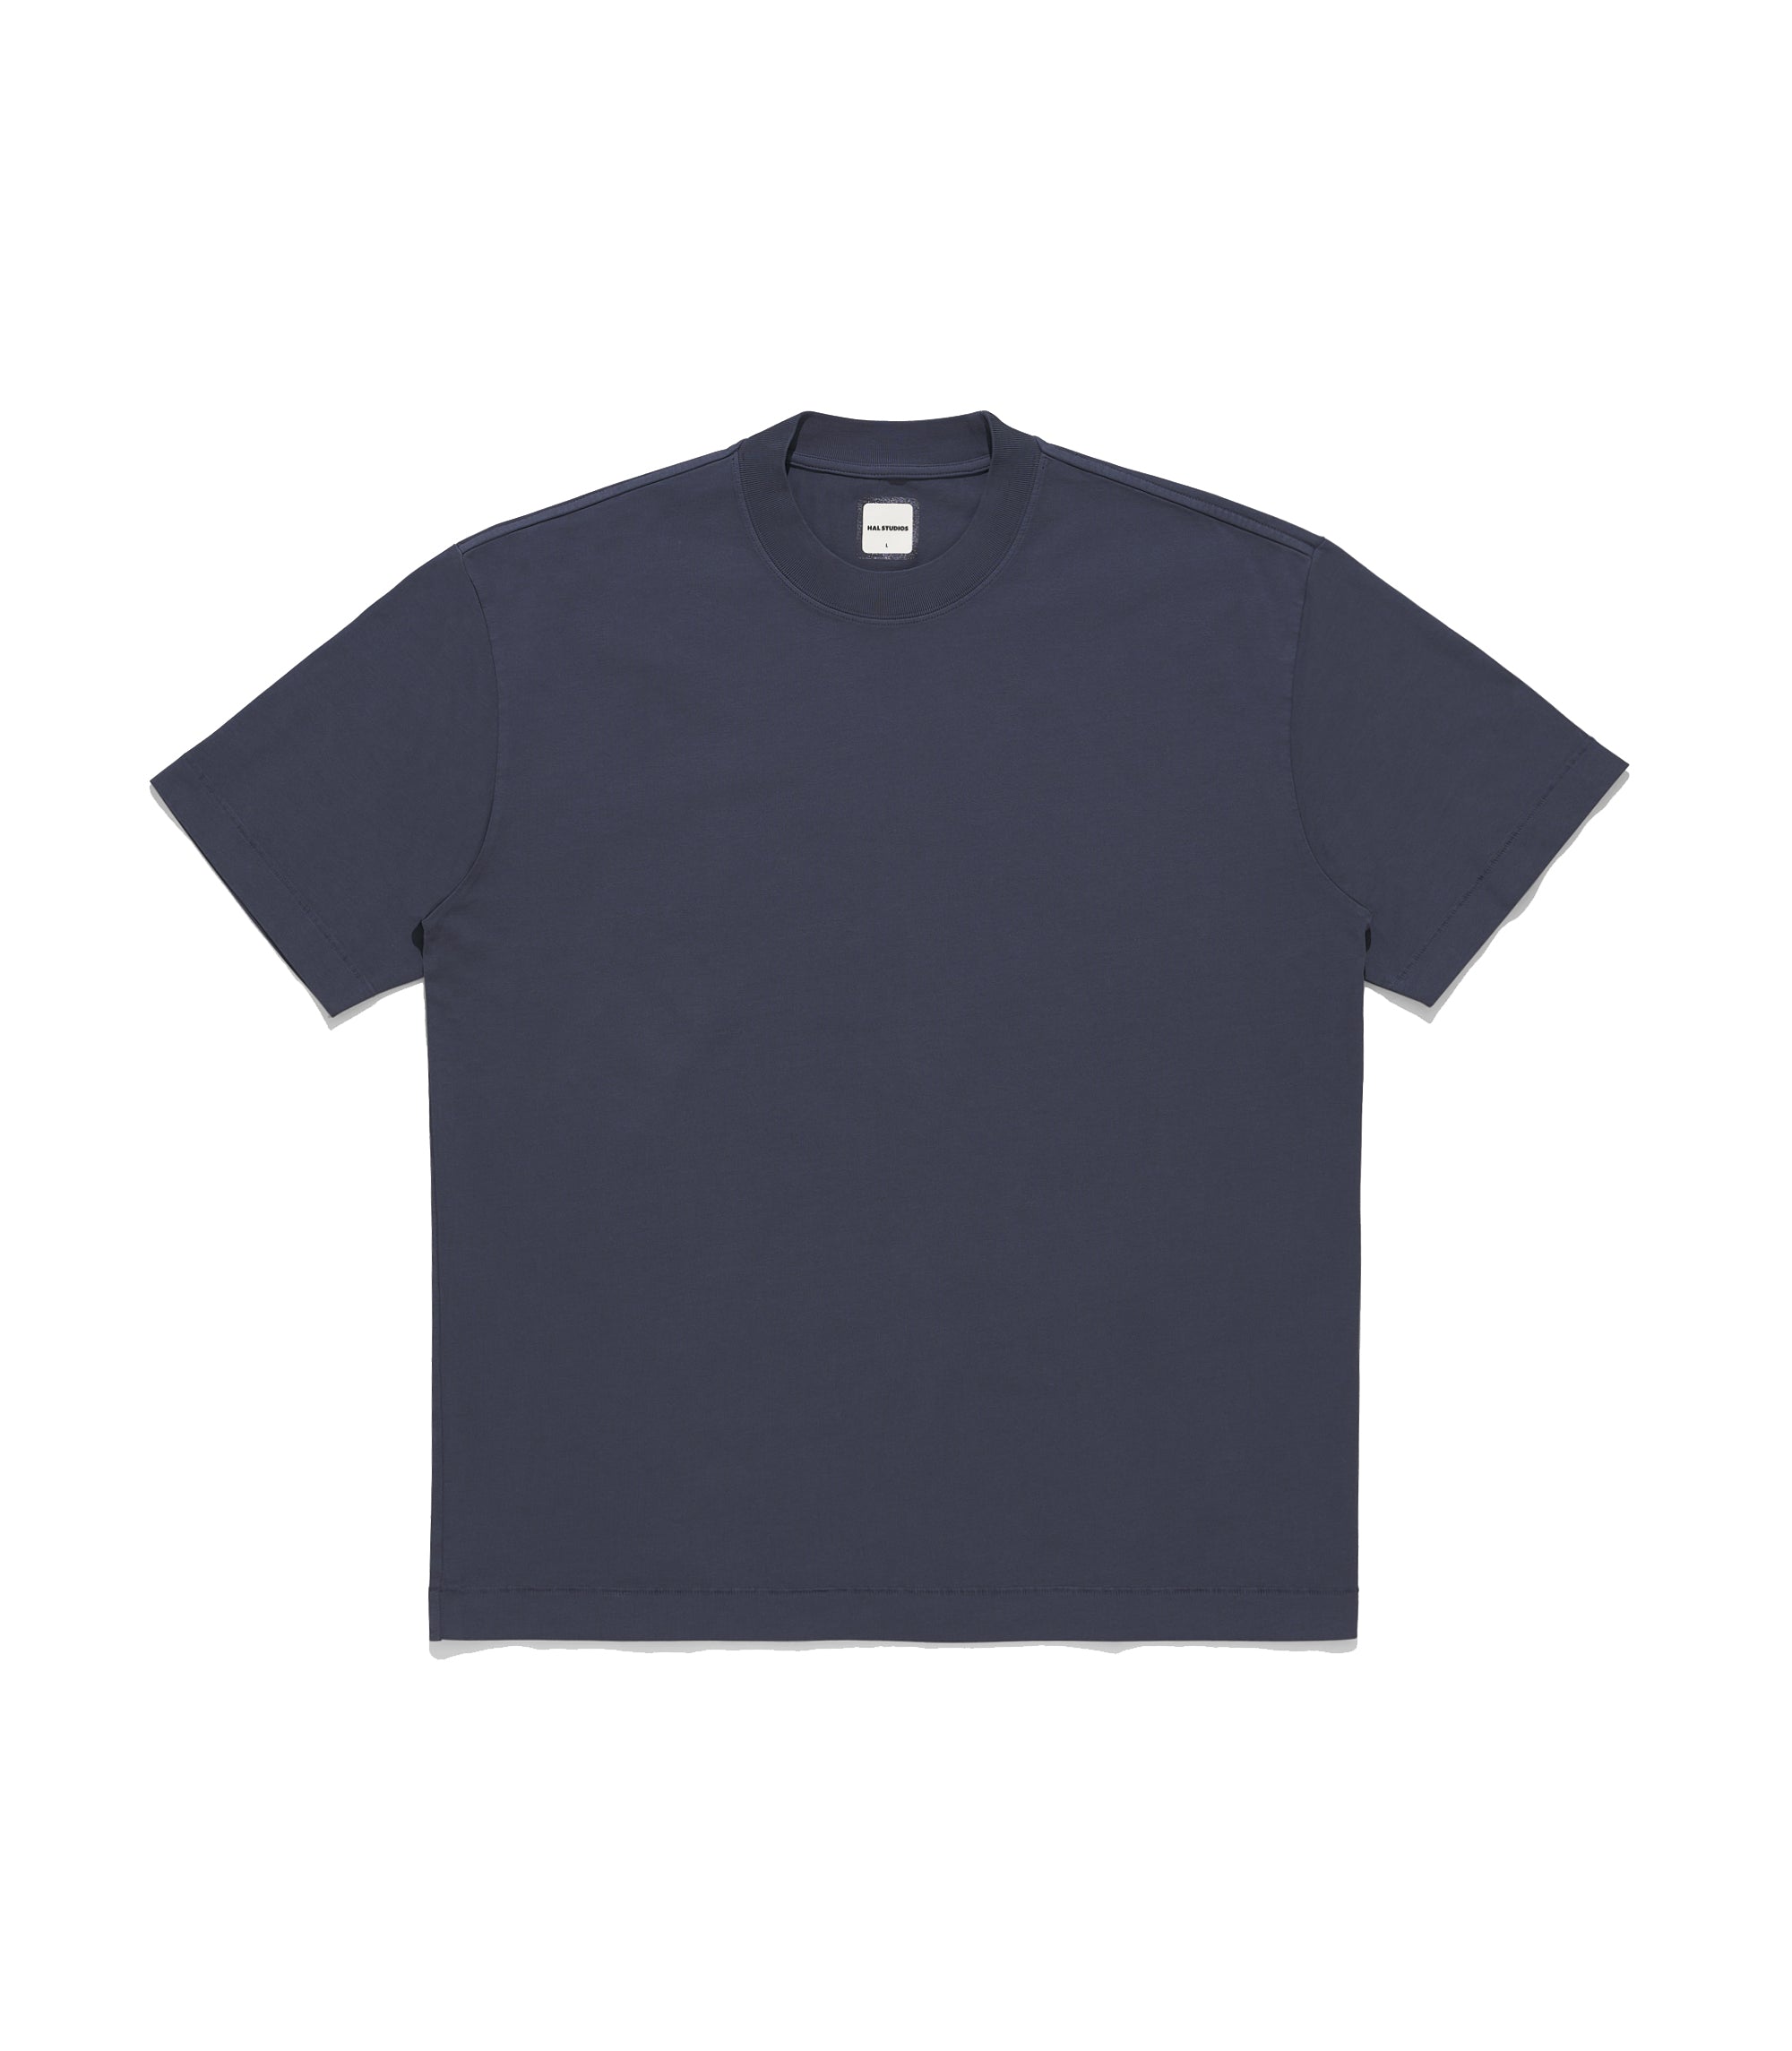 Studio T-Shirt - Graphite